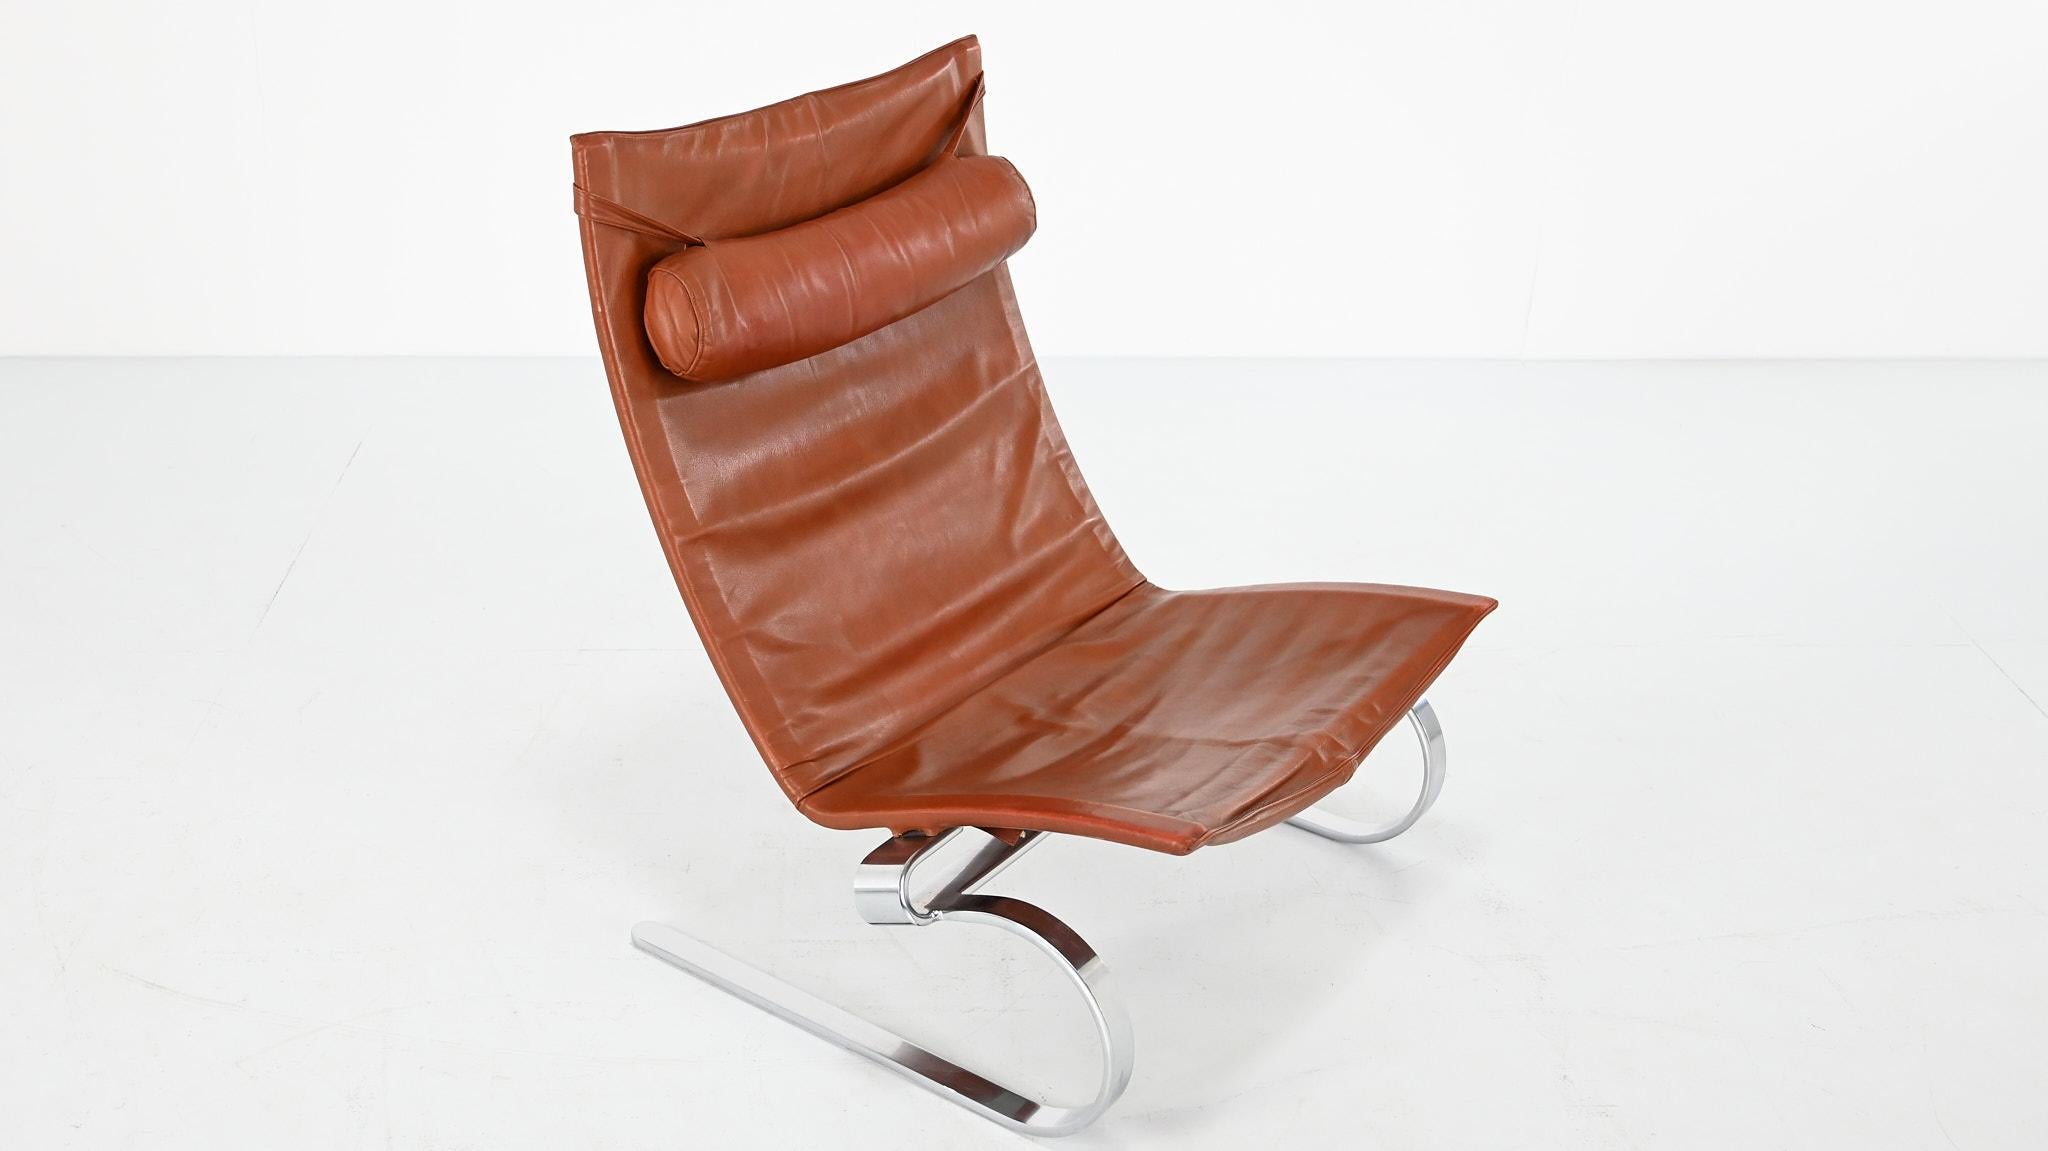 Poul Kjaerholm PK20 Lounge Chair E. Kold Christensen Denmark Steel Leather 1968 For Sale 14